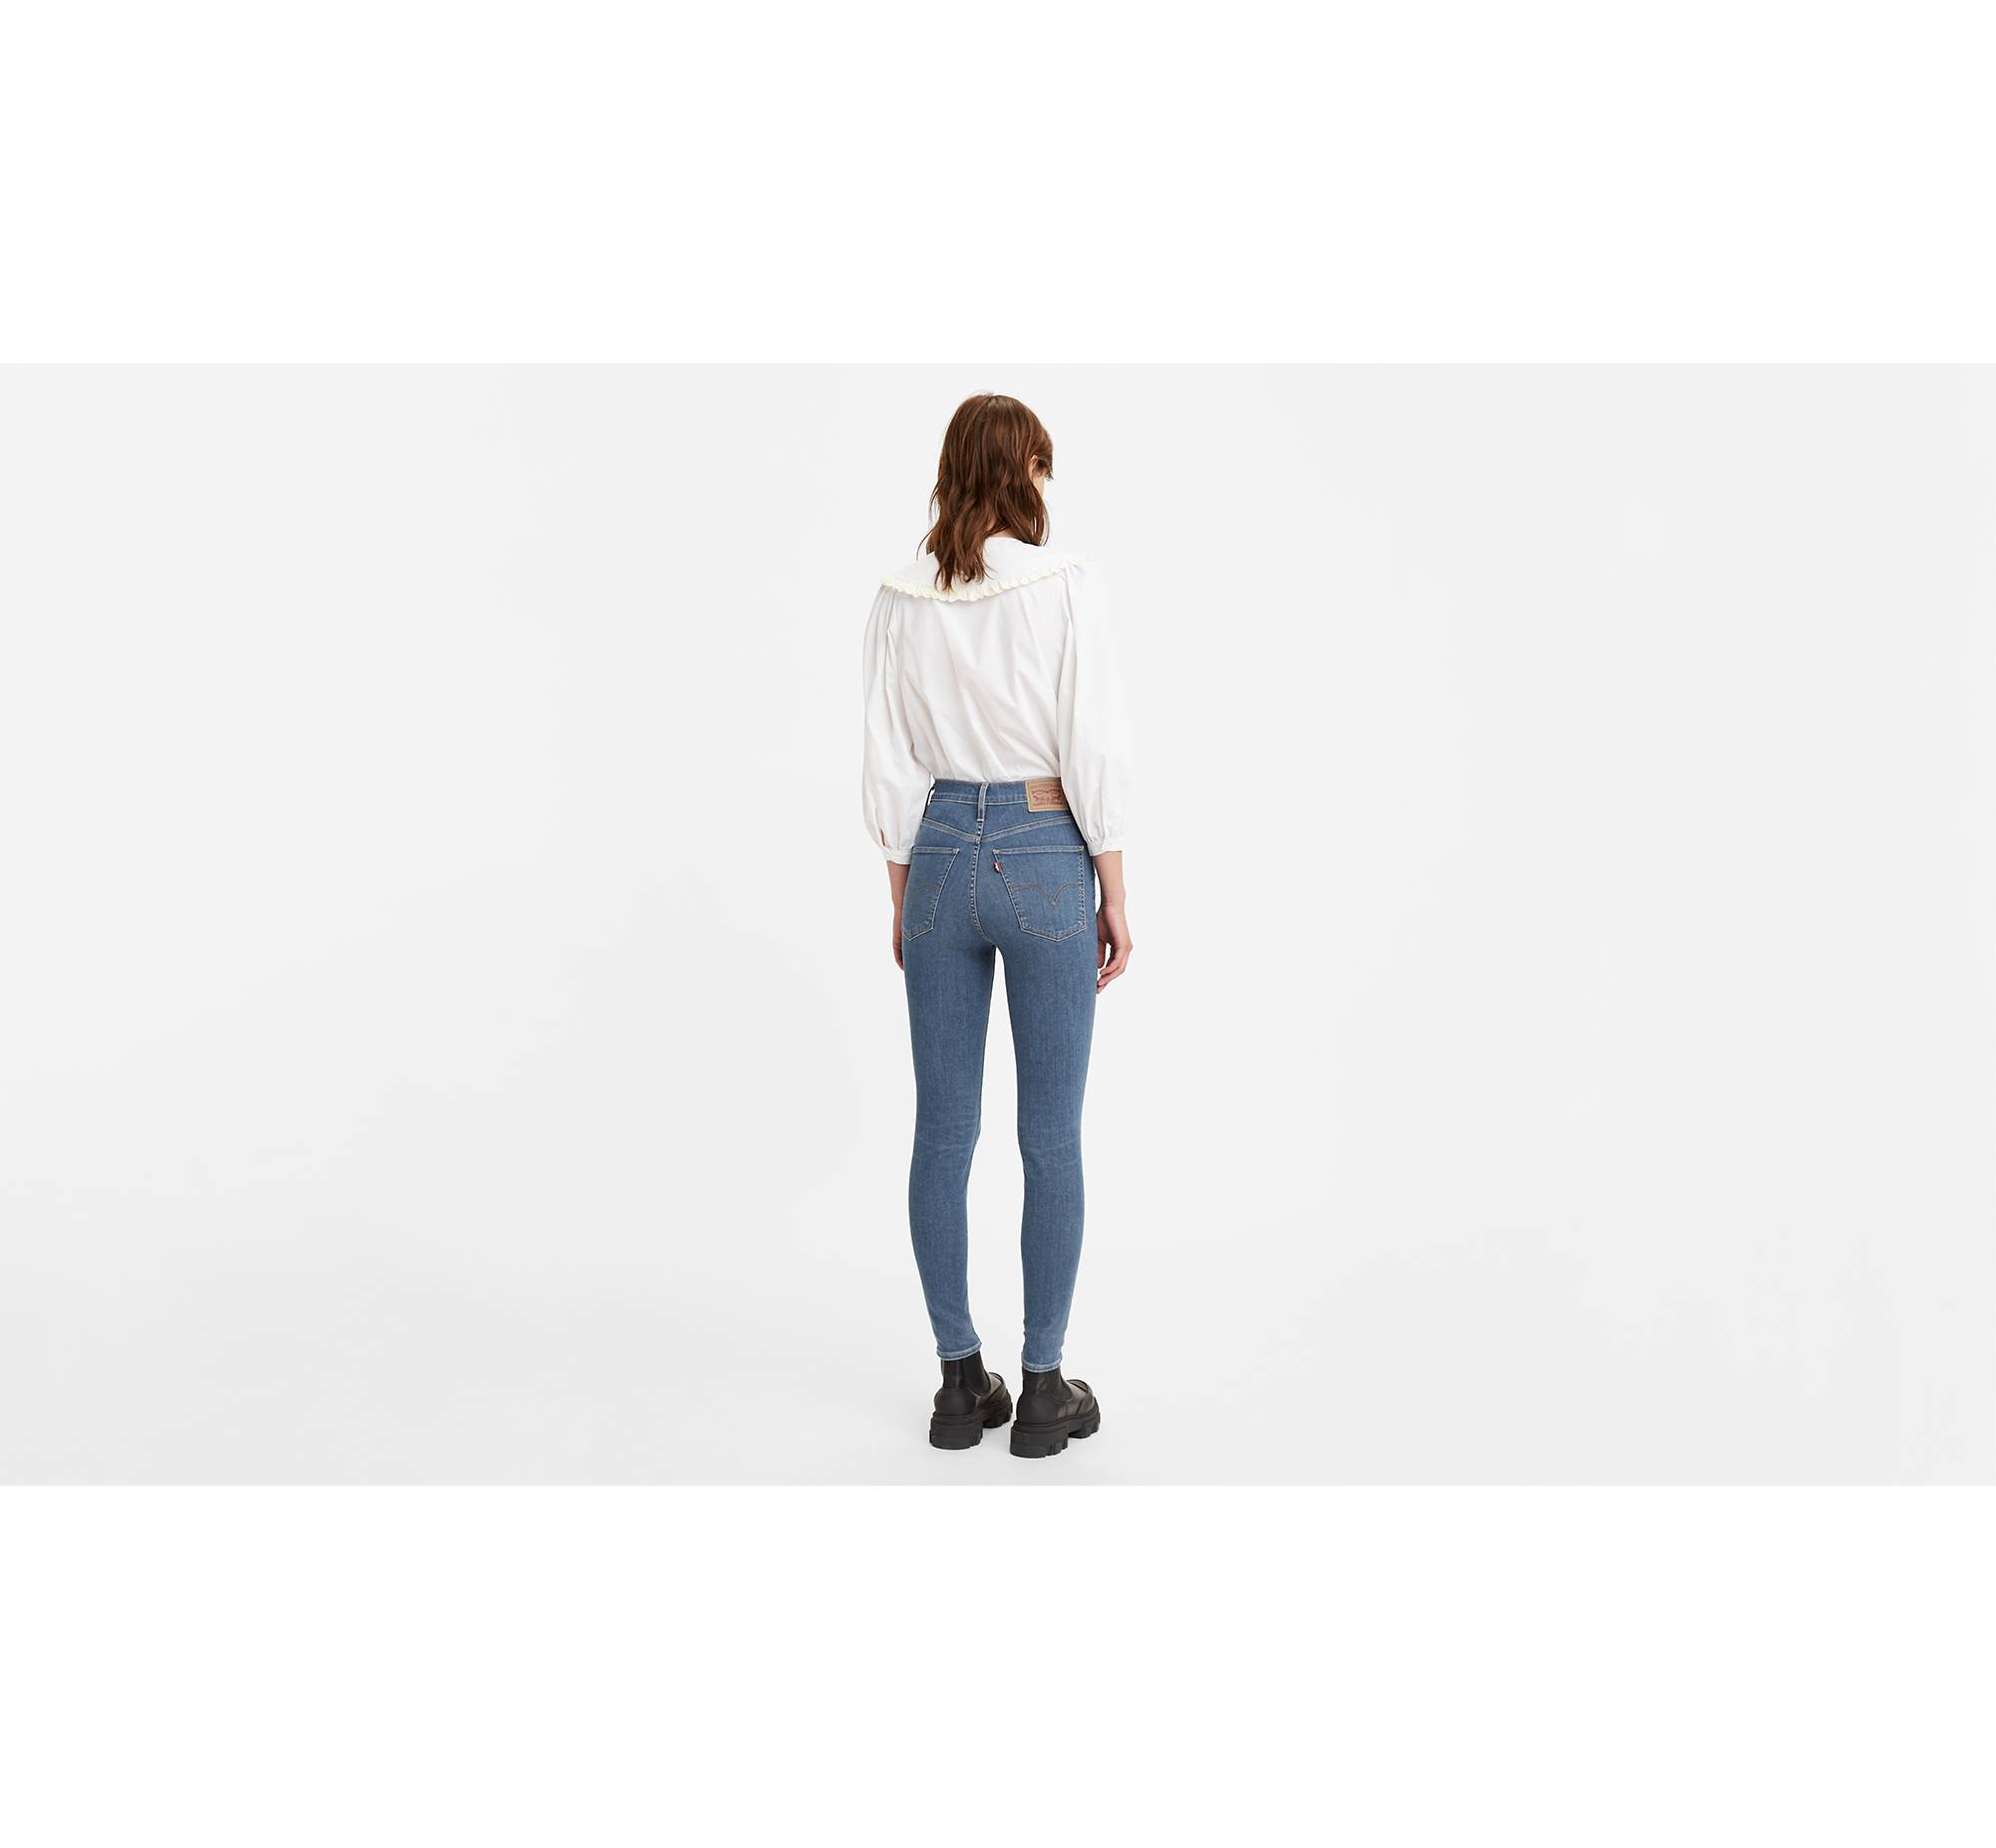 bede Indsigtsfuld kok Mile High Super Skinny Women's Jeans - Medium Wash | Levi's® US